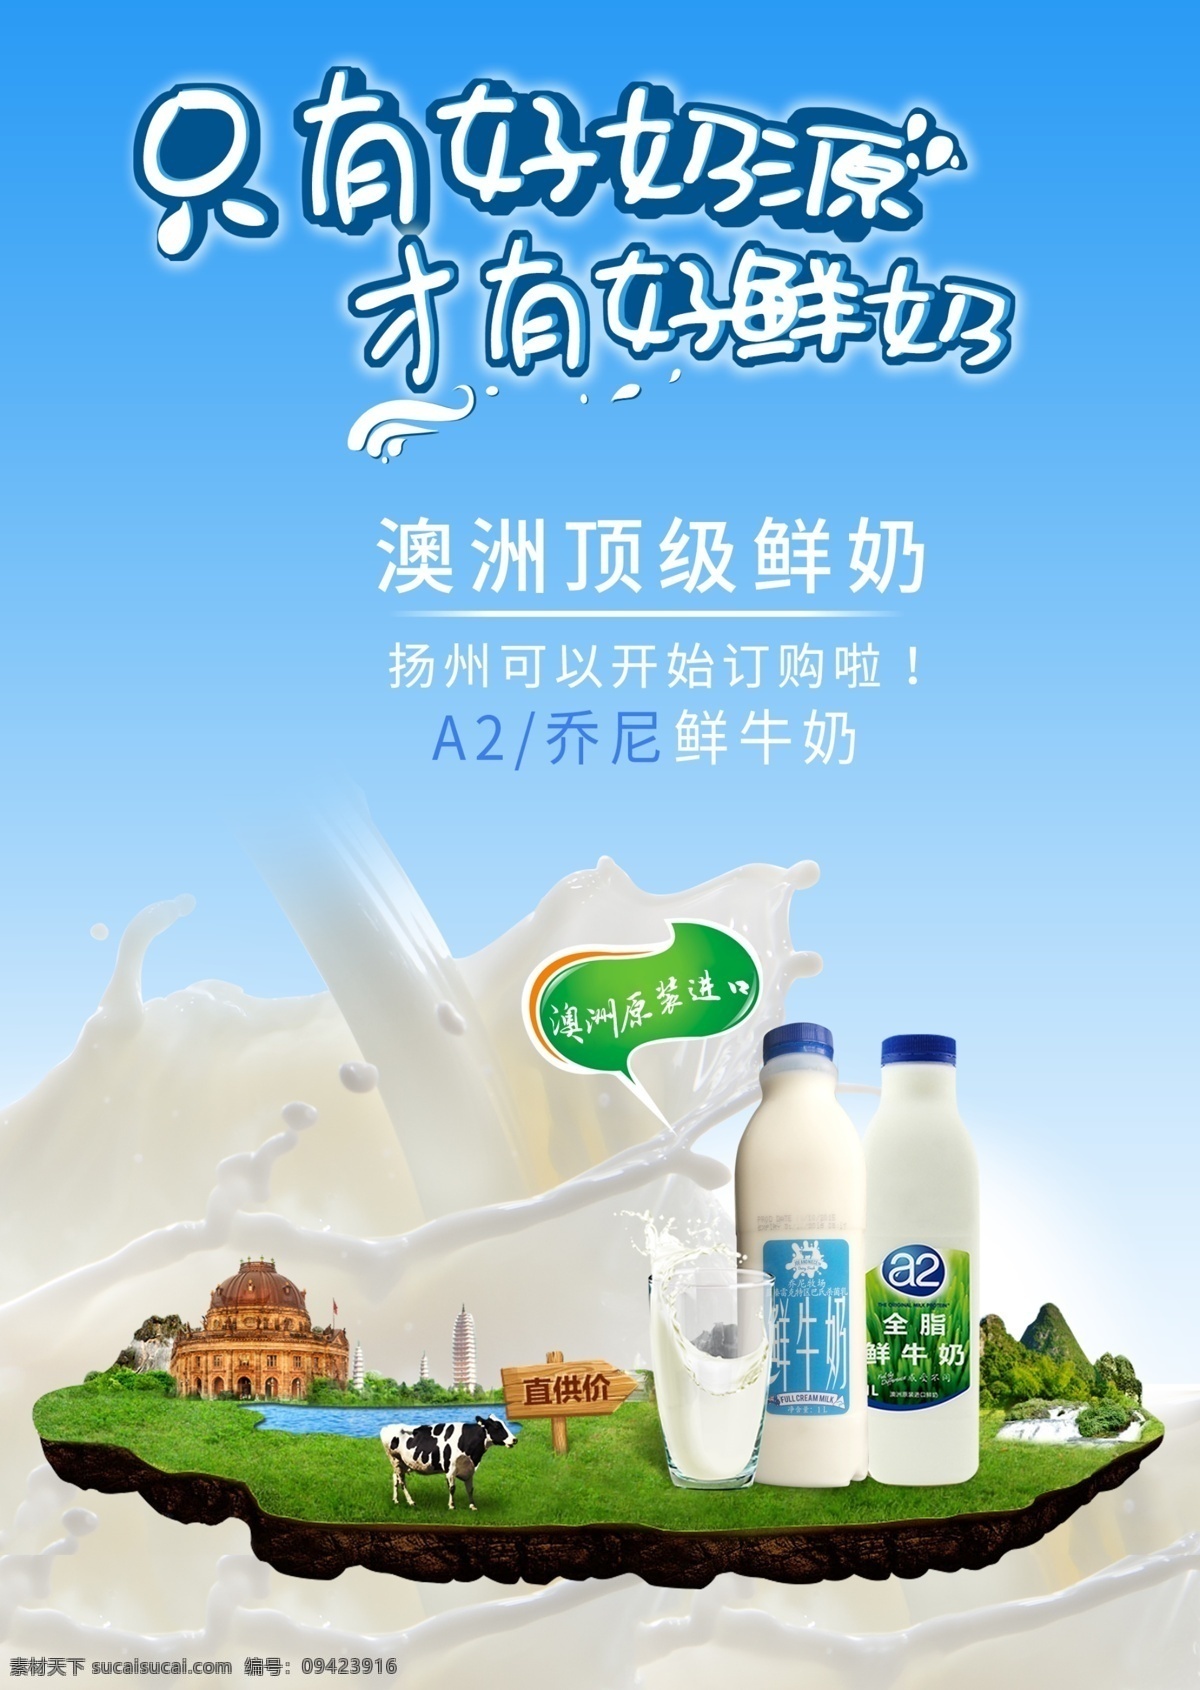 牛奶宣传单 牛奶 宣传单 淘宝素材 淘宝设计 淘宝模板下载 蓝色